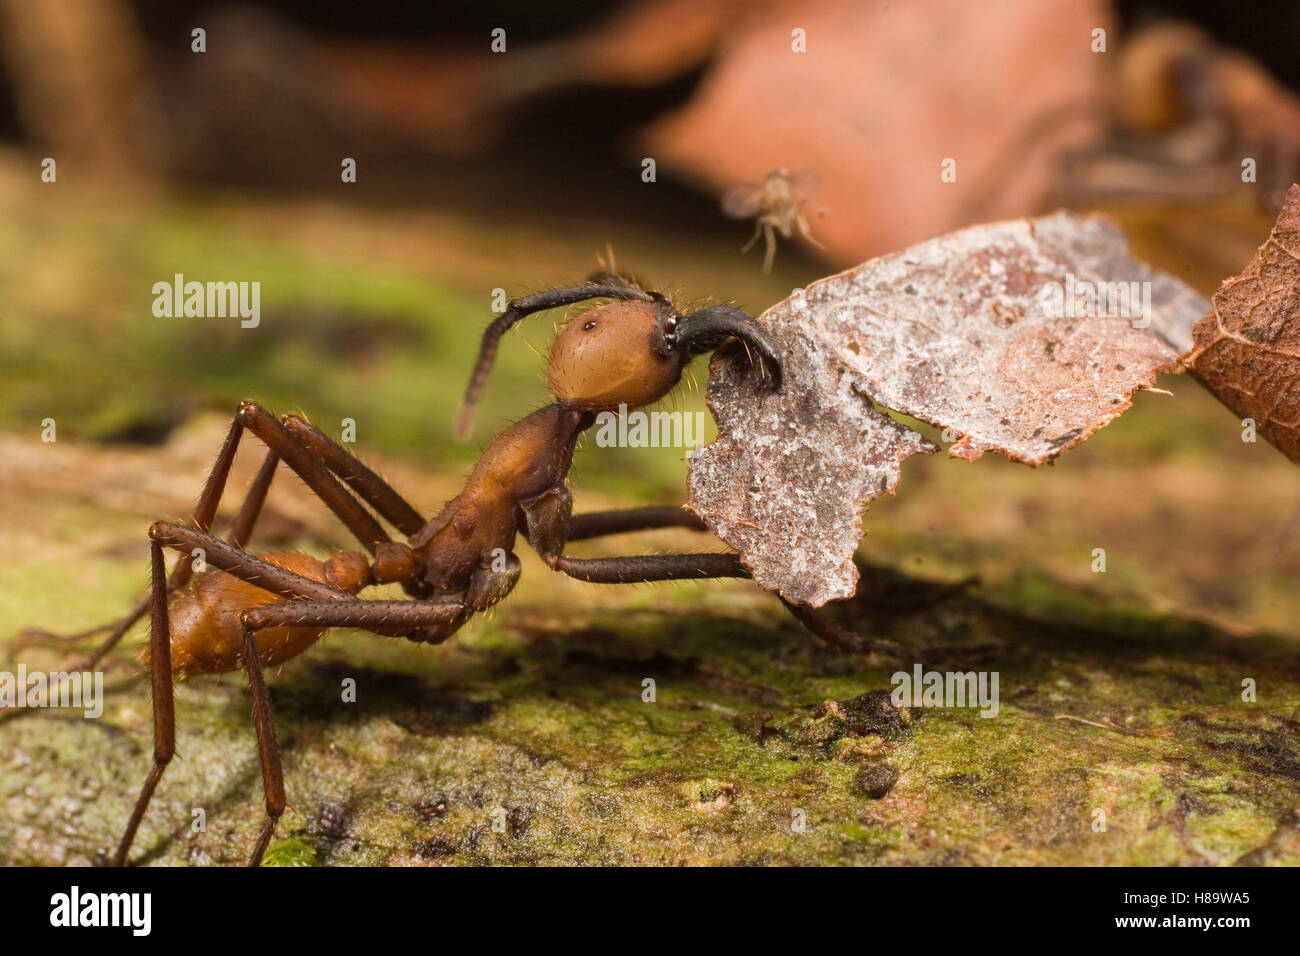 Ejército (Eciton burchellii Ant) llevando hojas, a punto de ser desembarcada por diminuta mosca parasitaria que intentará poner un huevo en la Foto de stock